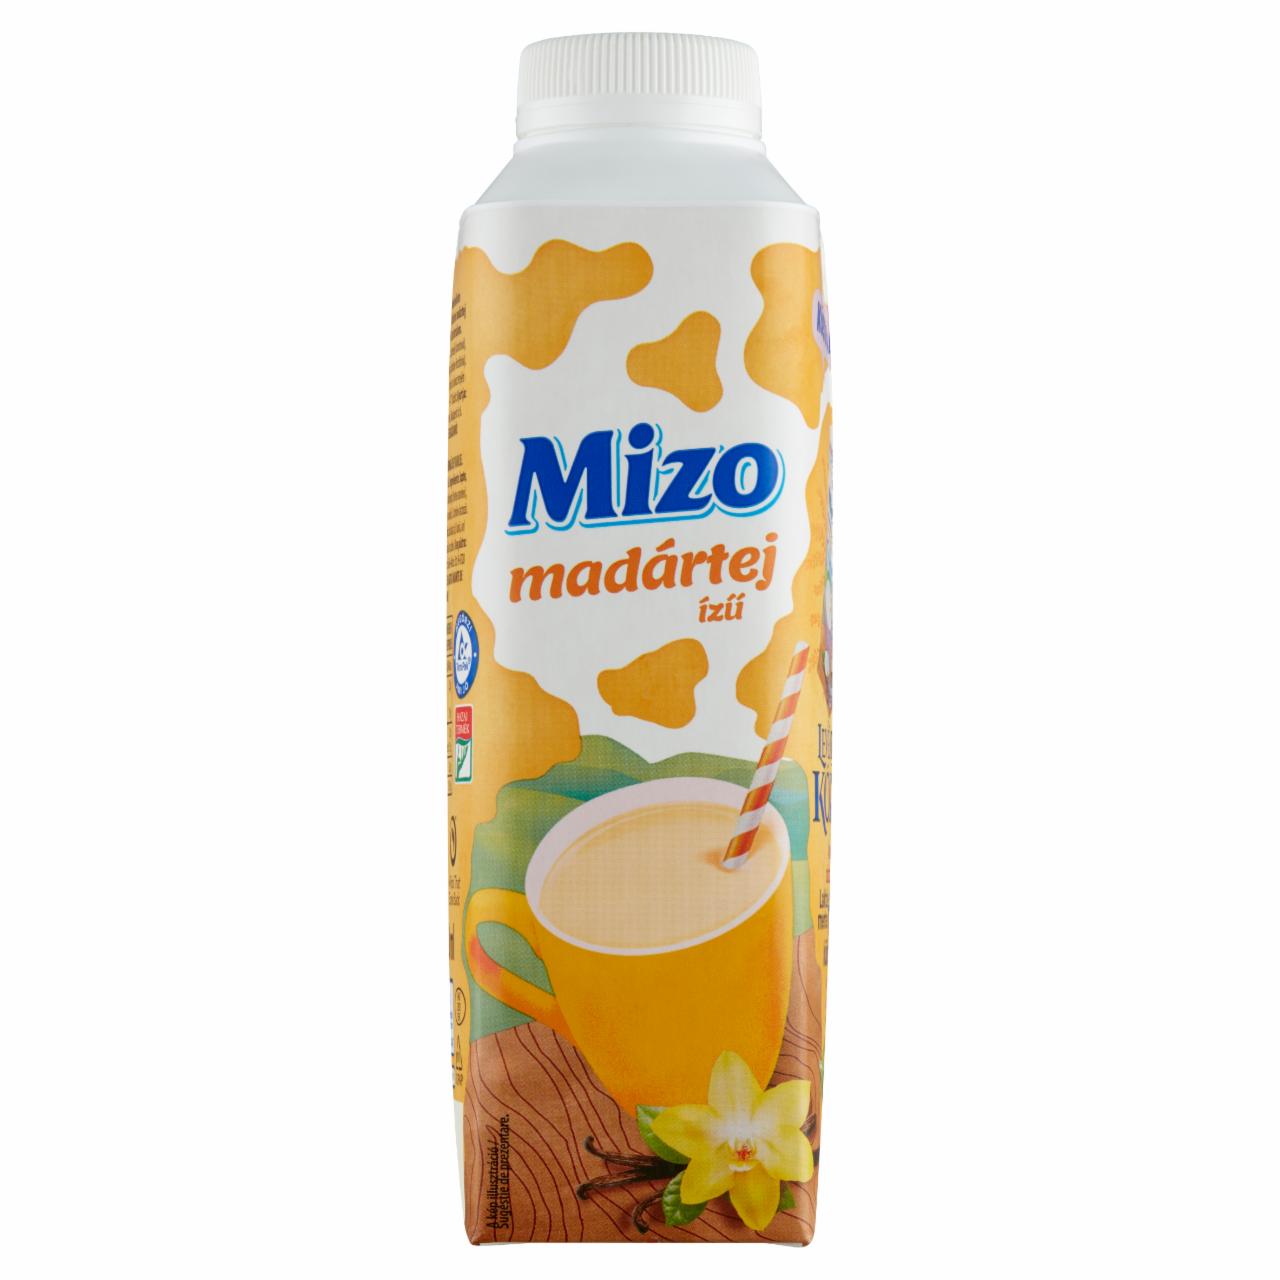 Képek - Mizo félzsíros madártej ízű tej 450 ml